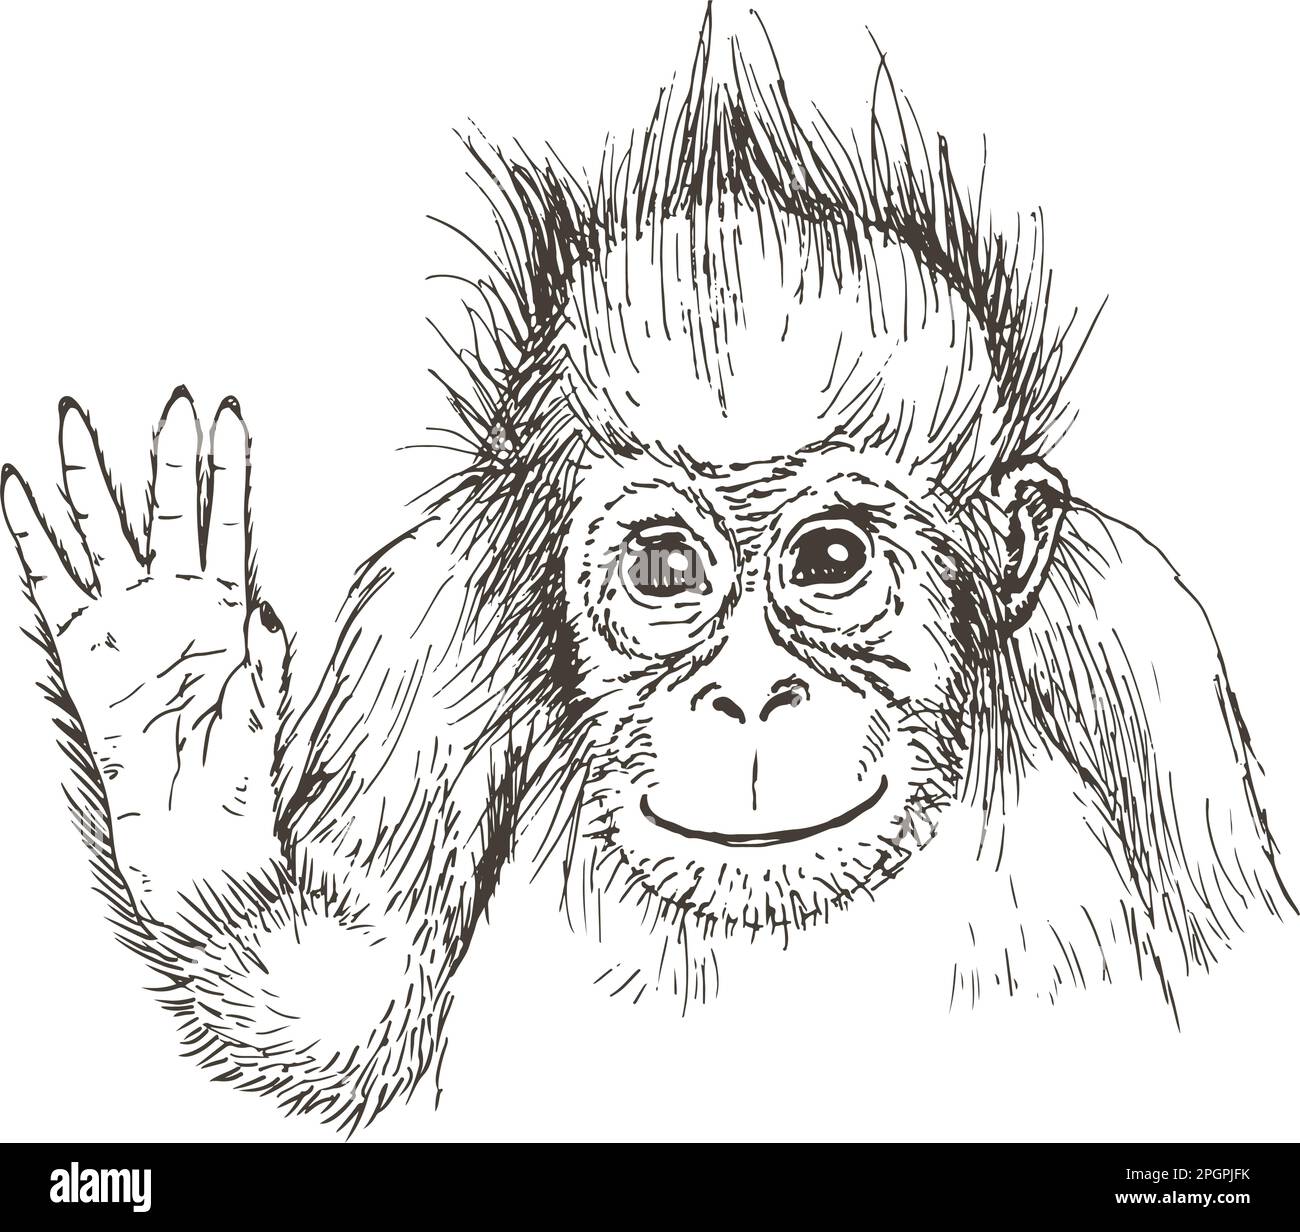 Handgezeichnete realistische Skizze von Orang-Utan. Vektordarstellung Stock Vektor